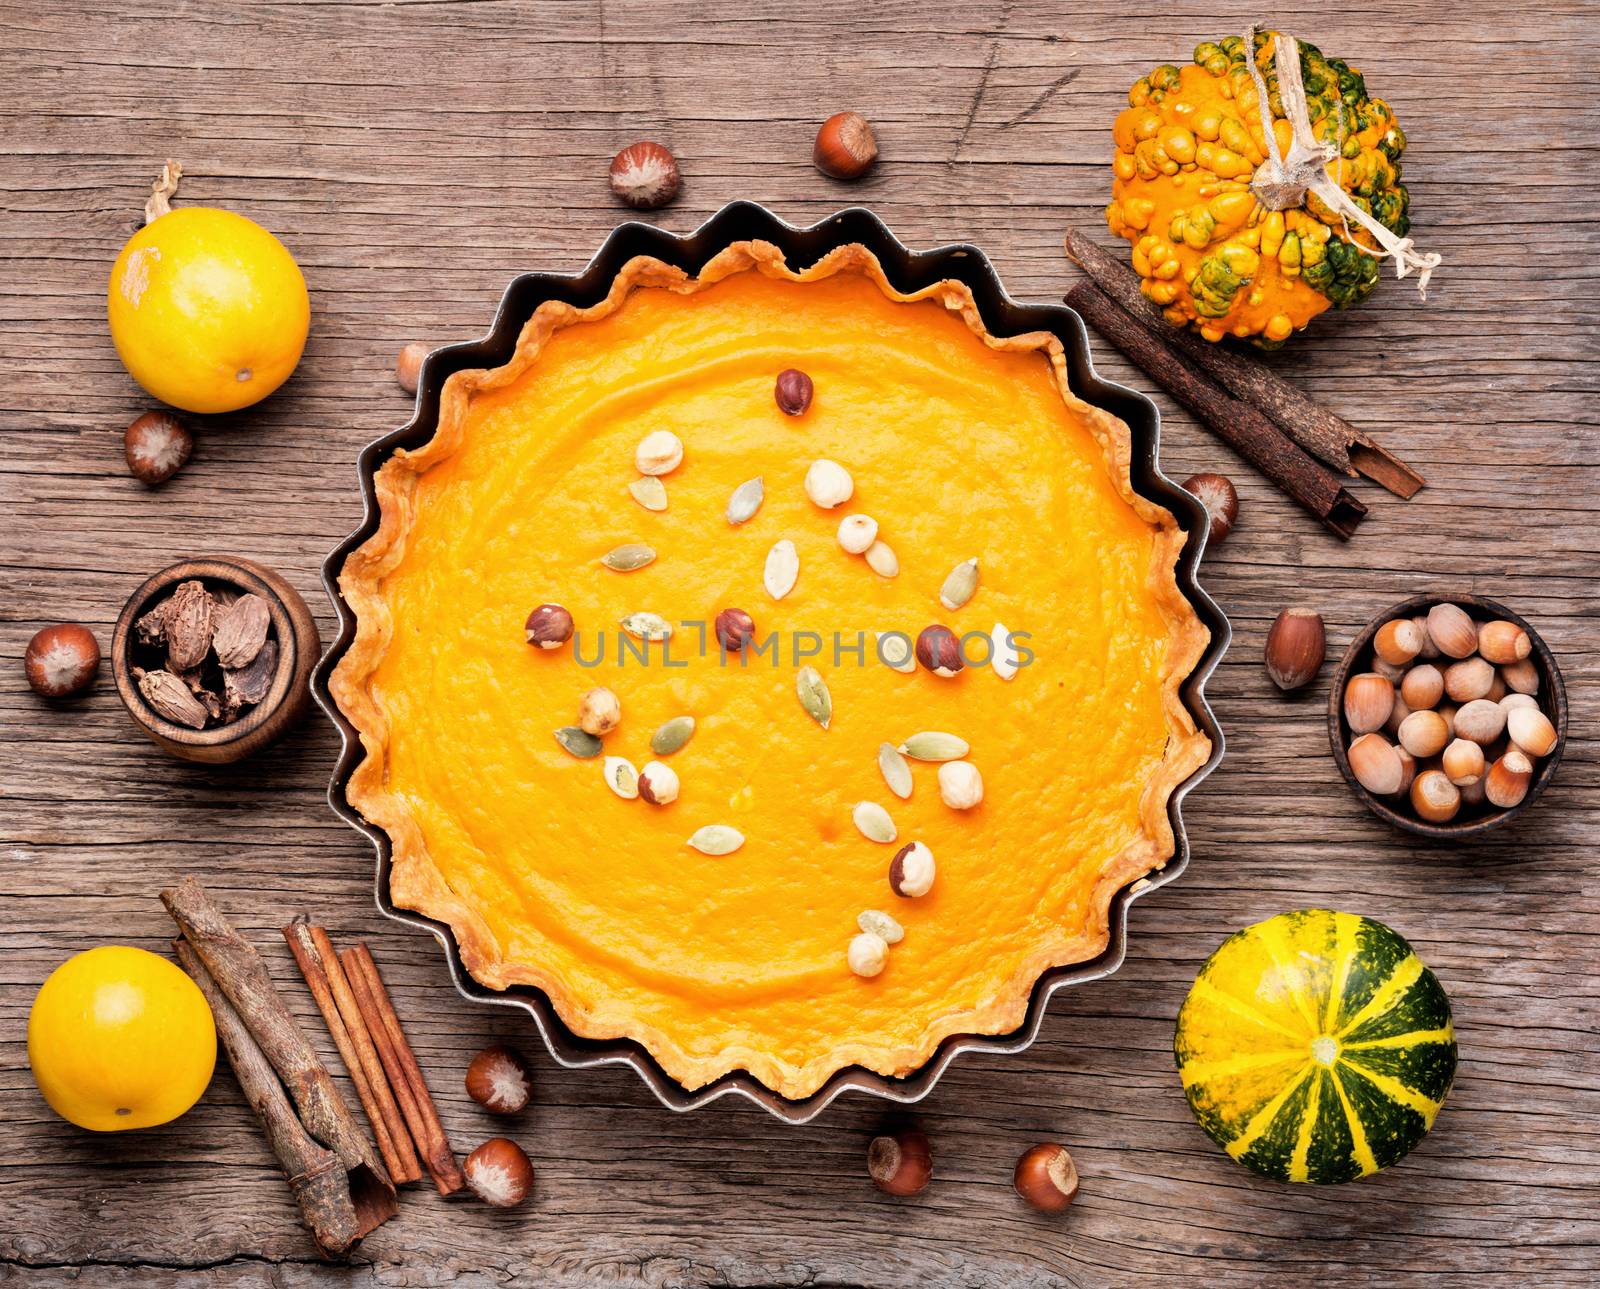 Autumn pumpkin pie by LMykola